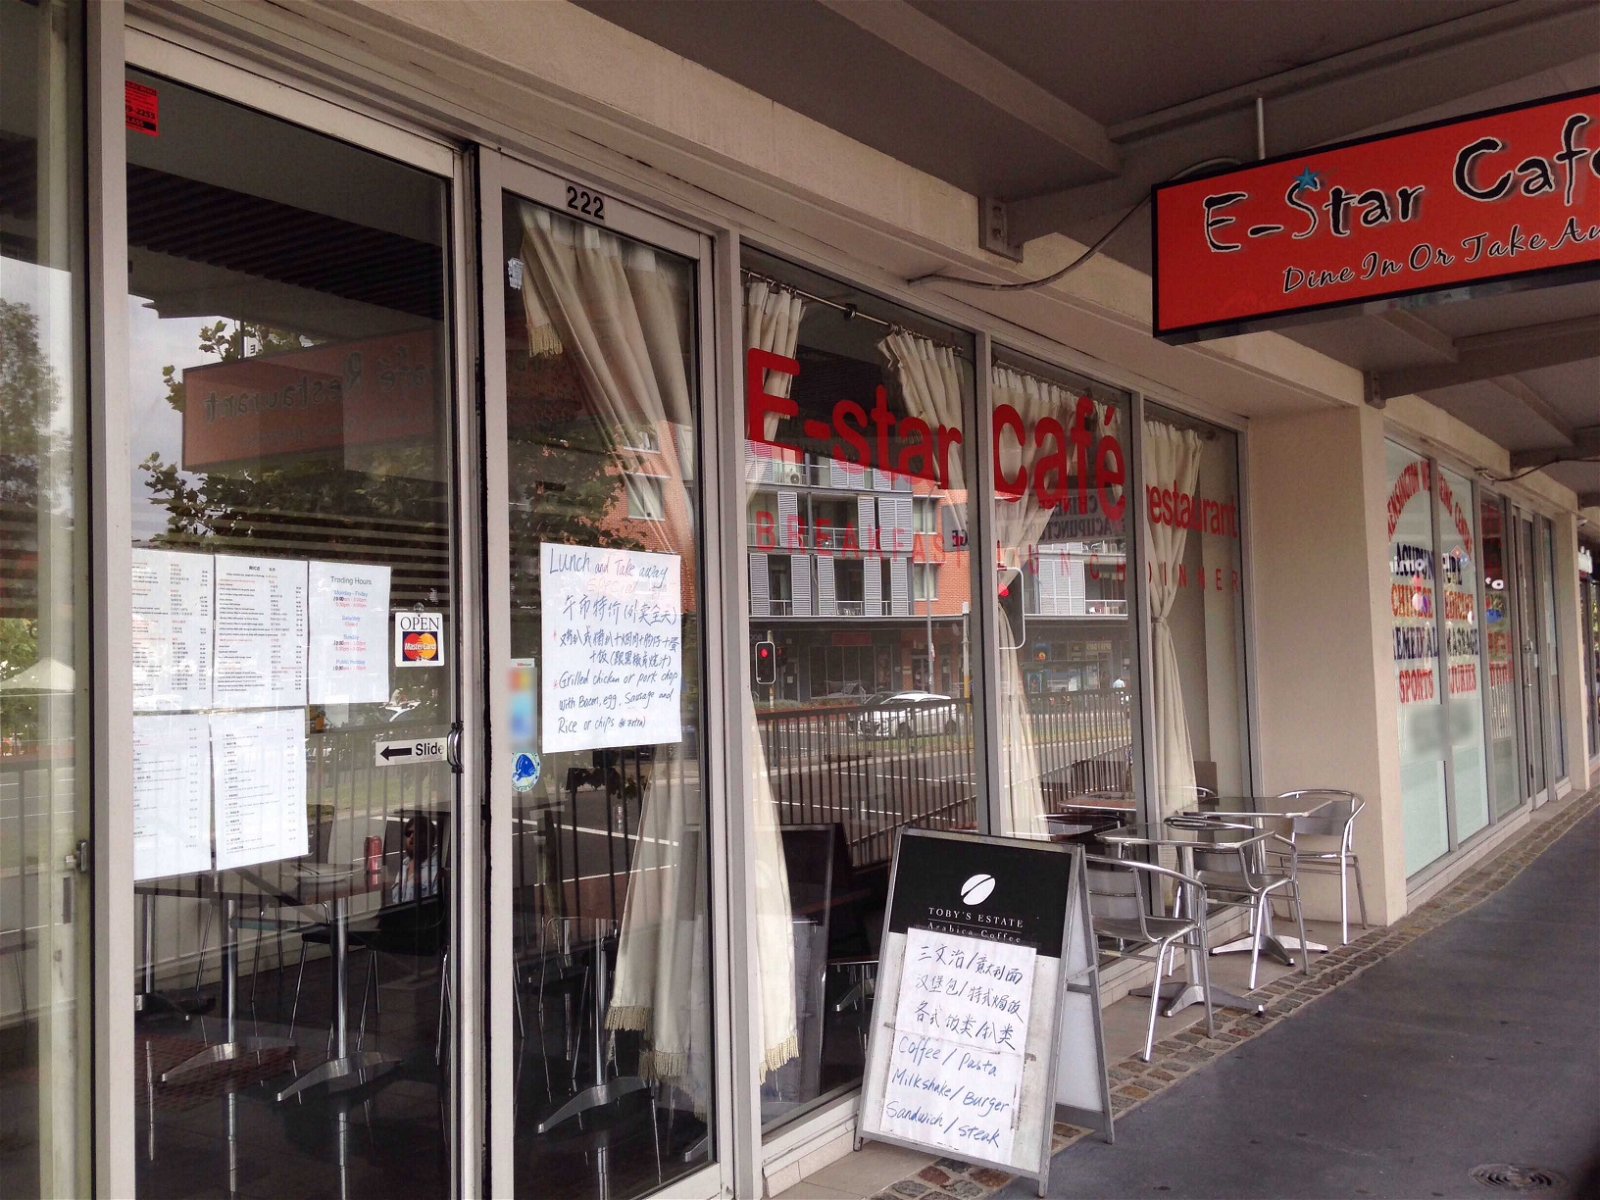 E-Star Cafe Restaurant - South Australia Travel